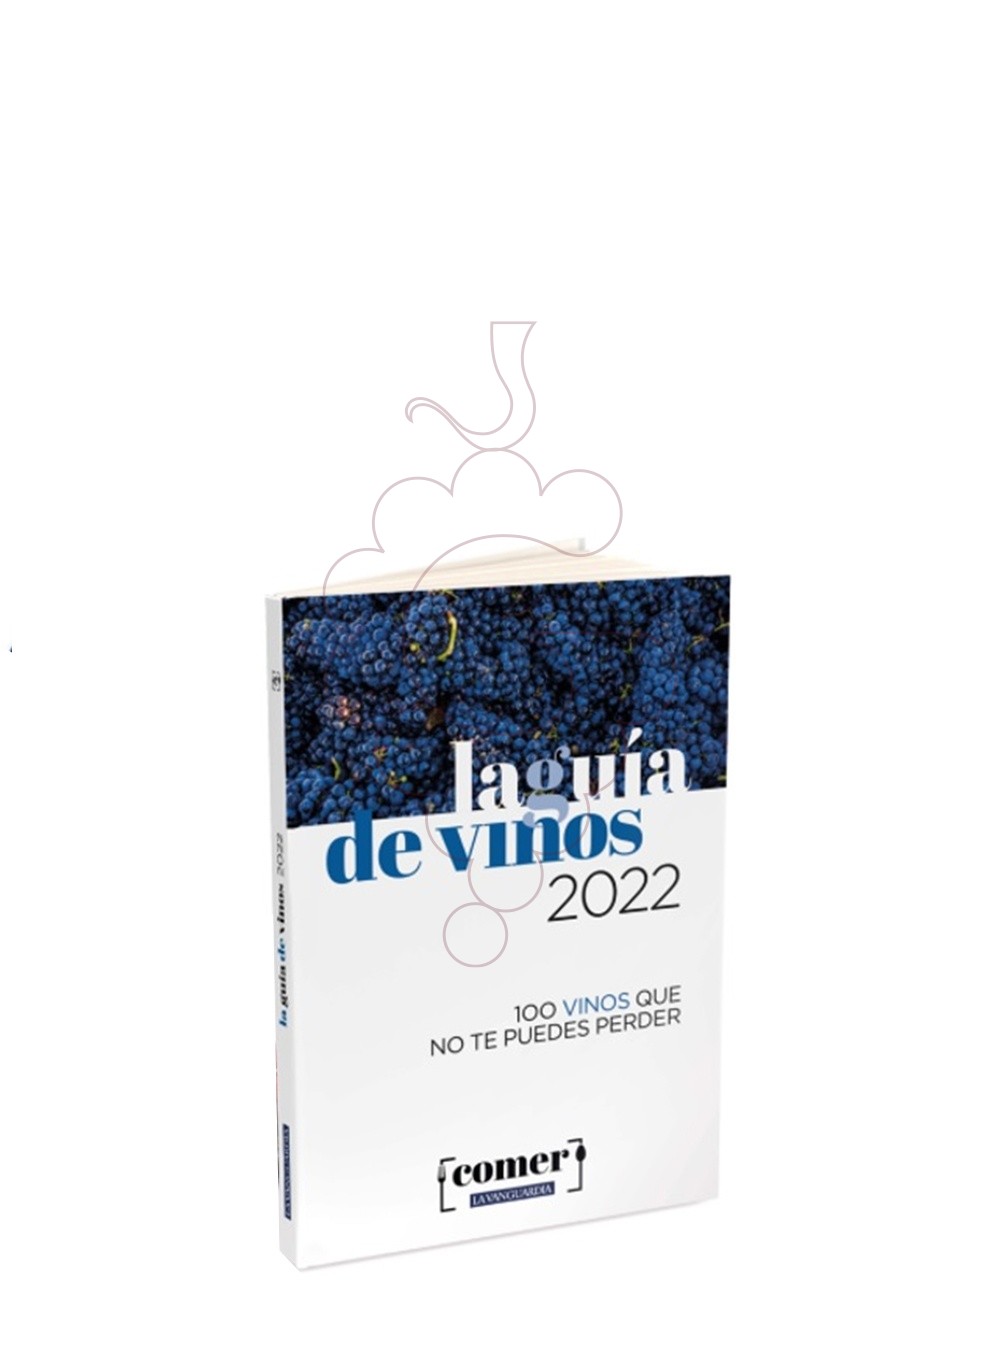 Foto Librería La guia vinos 2022 vanguardia